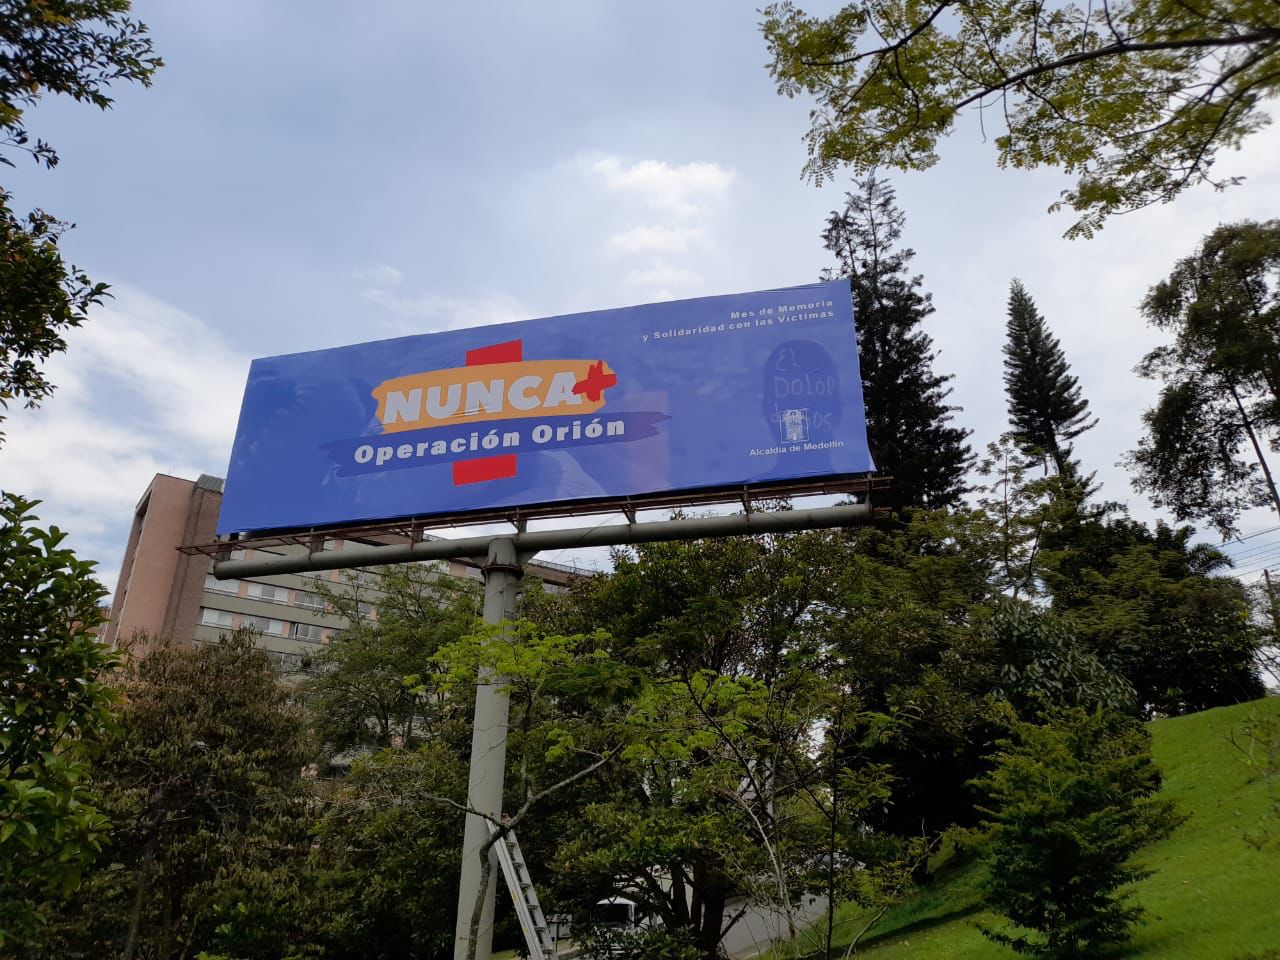 En Medellín están conmemorando la Semana de la Solidaridad con las Víctimas del Conflicto Armado, pero los mensajes puestos en las vallas han levantado ampolla.